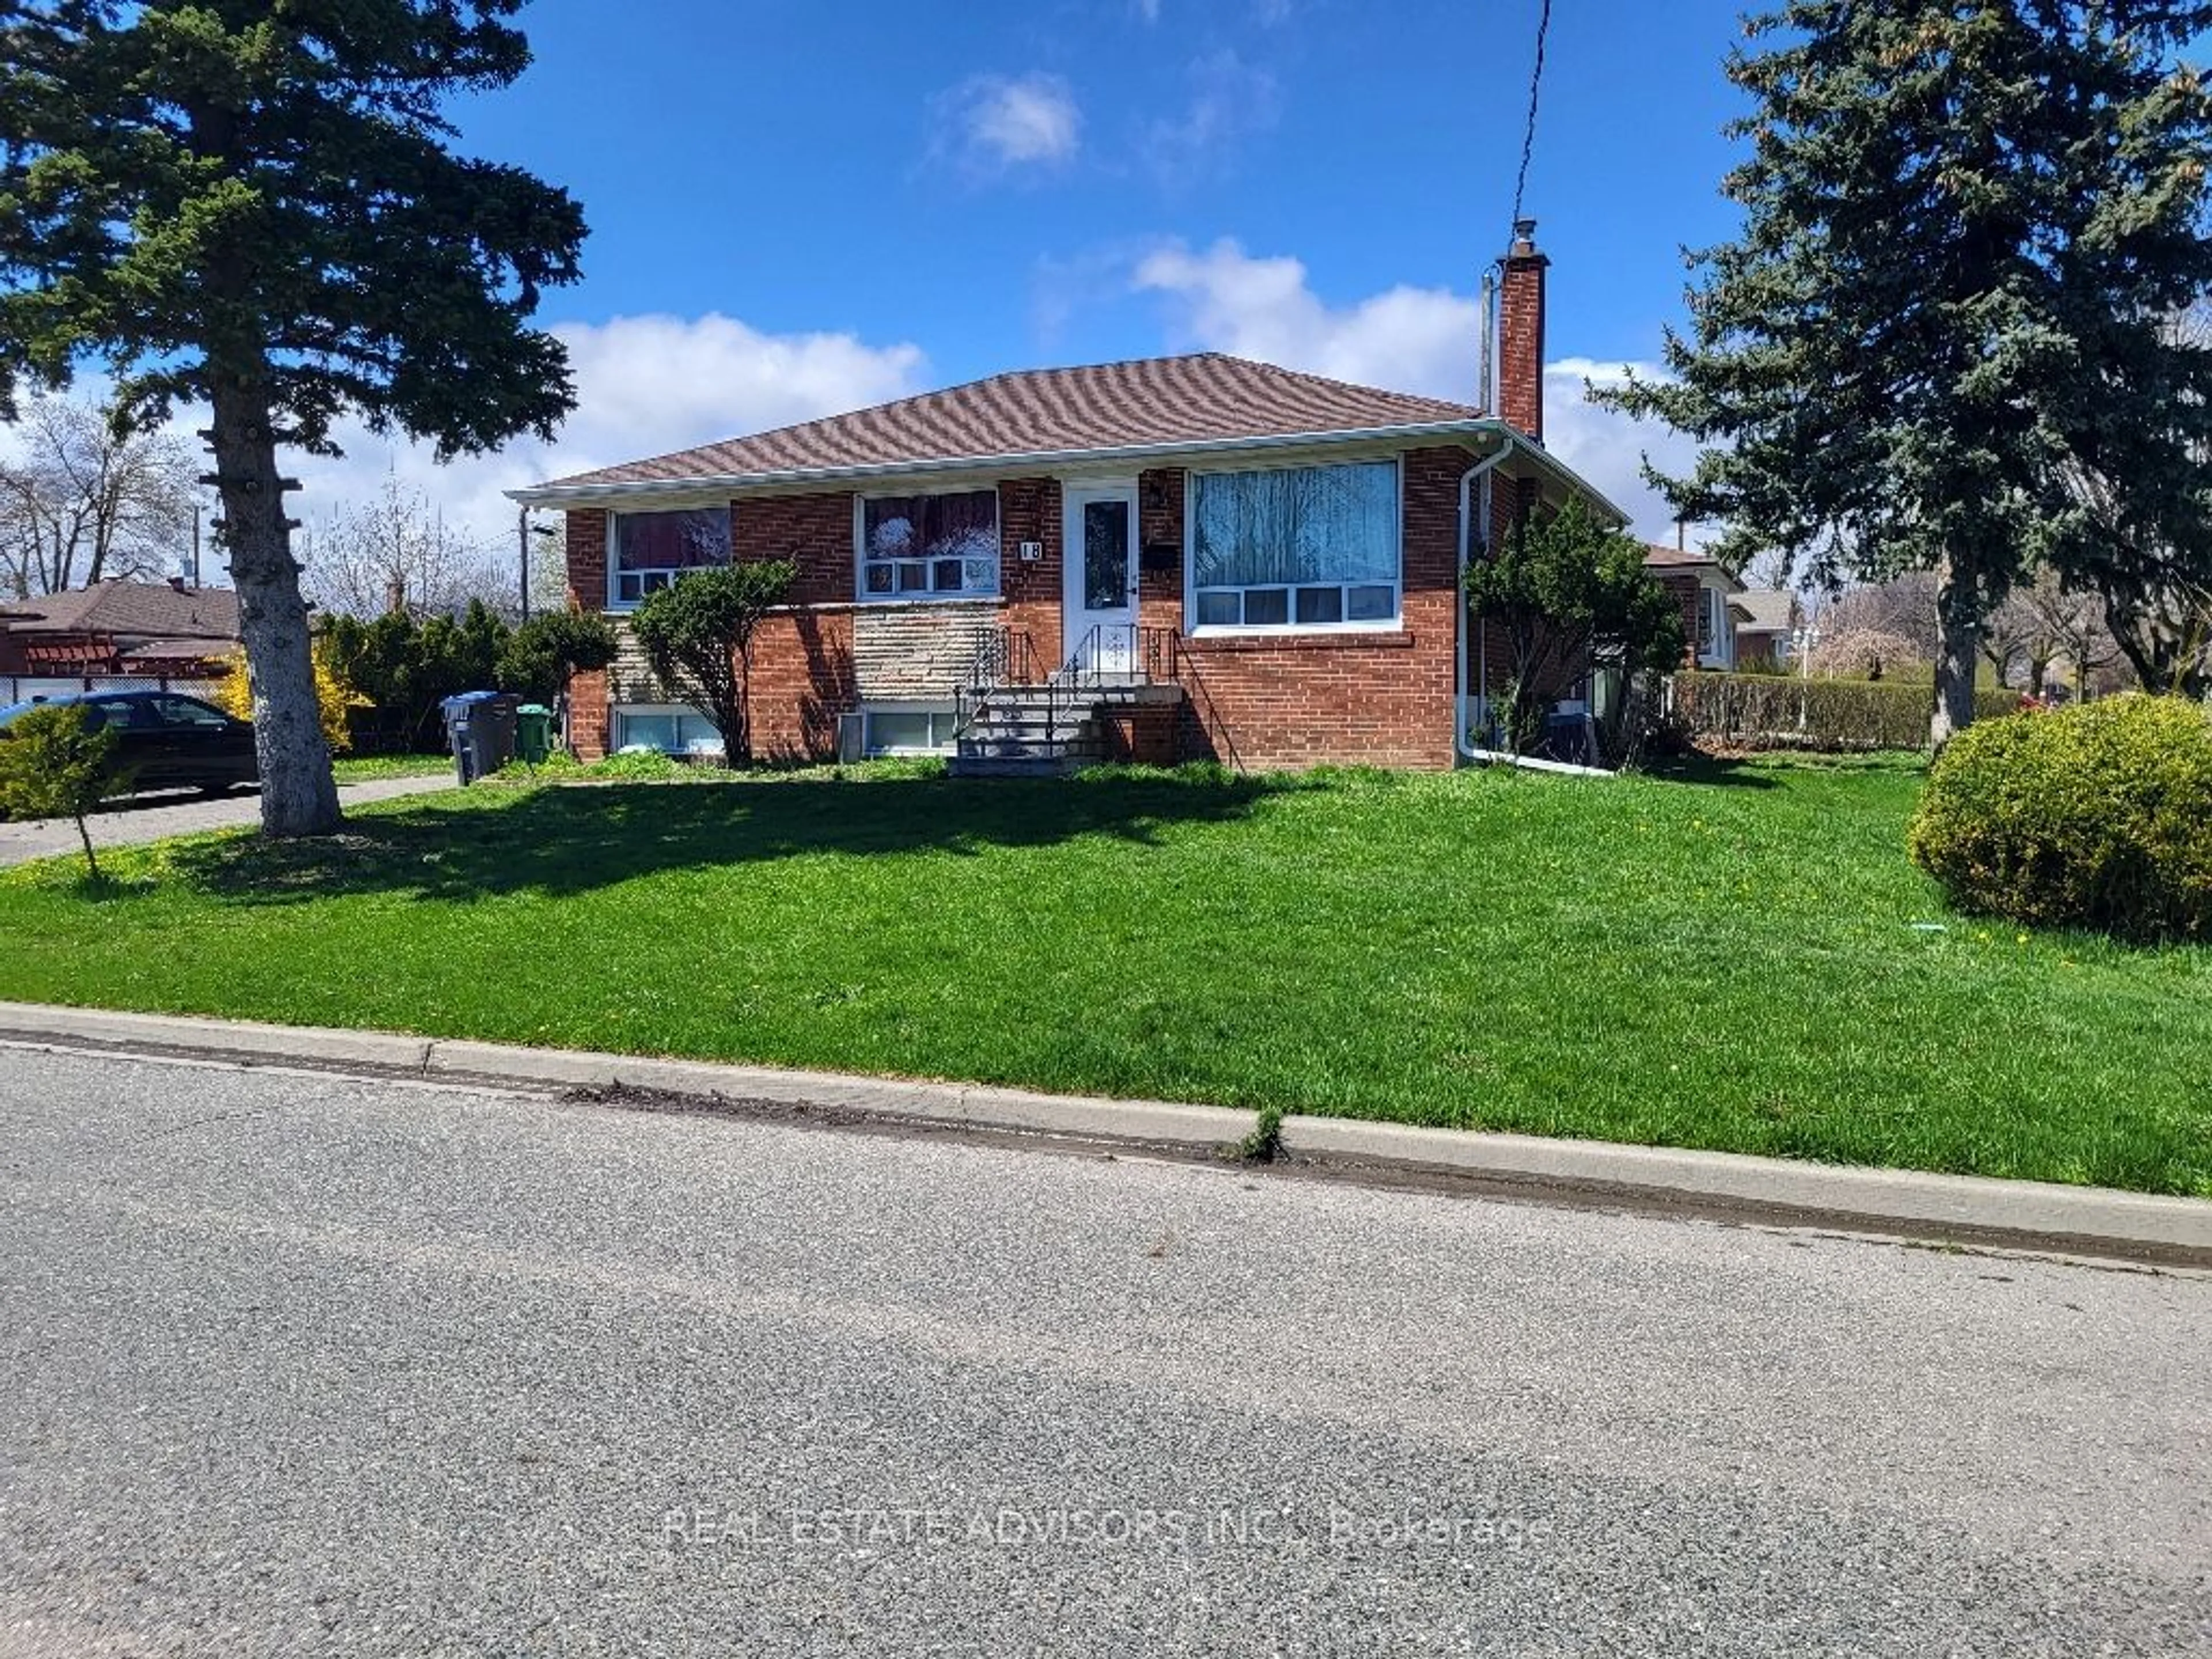 Frontside or backside of a home for 18 Edgemont Dr, Brampton Ontario L6V 1L1